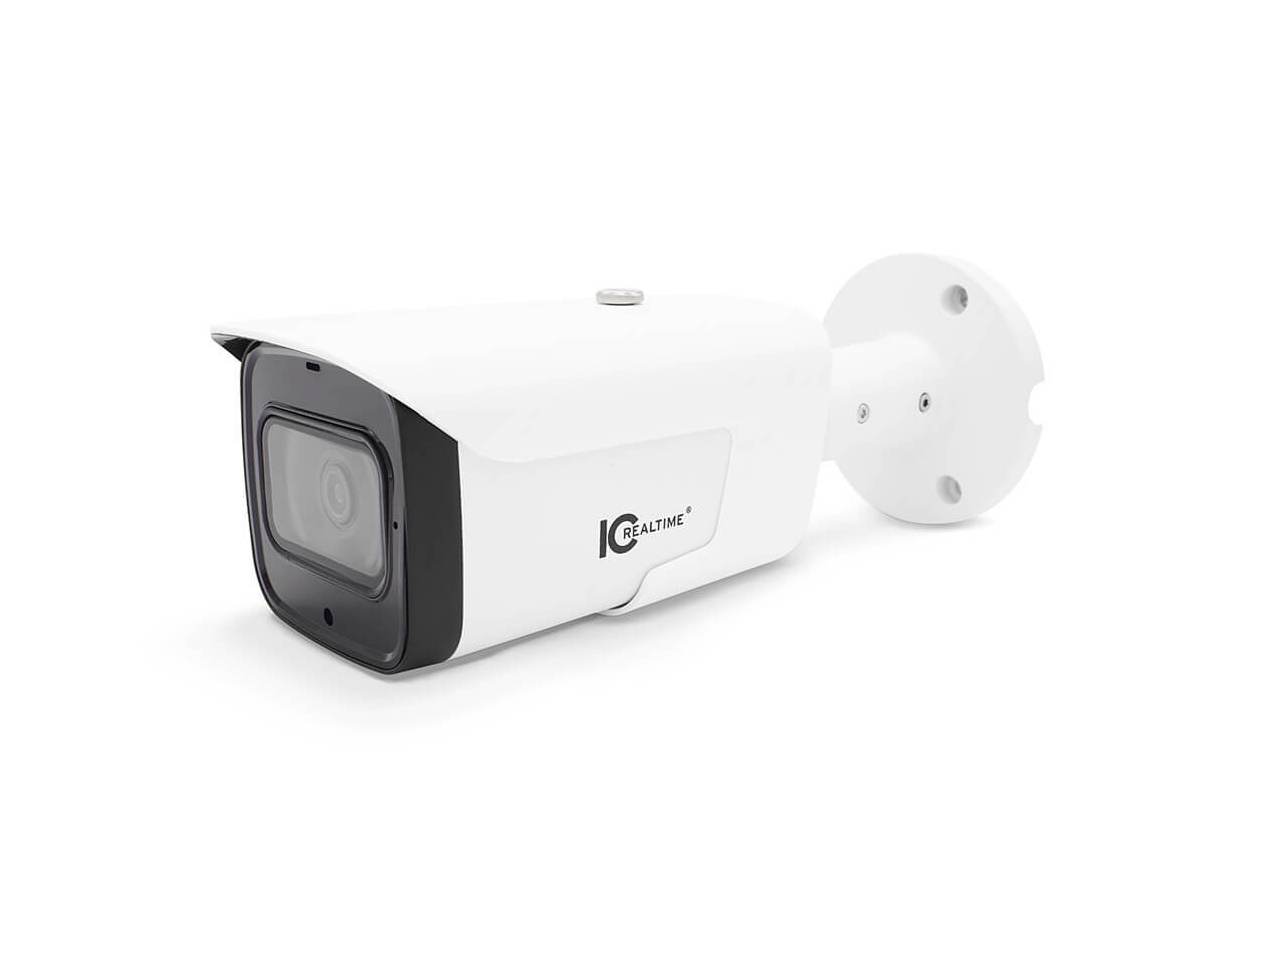 IPFX-B80V-IRW1 8MP IP Indoor/Outdoor Mid Size Bullet Camera (197ft Smart IR) by ICRealtime